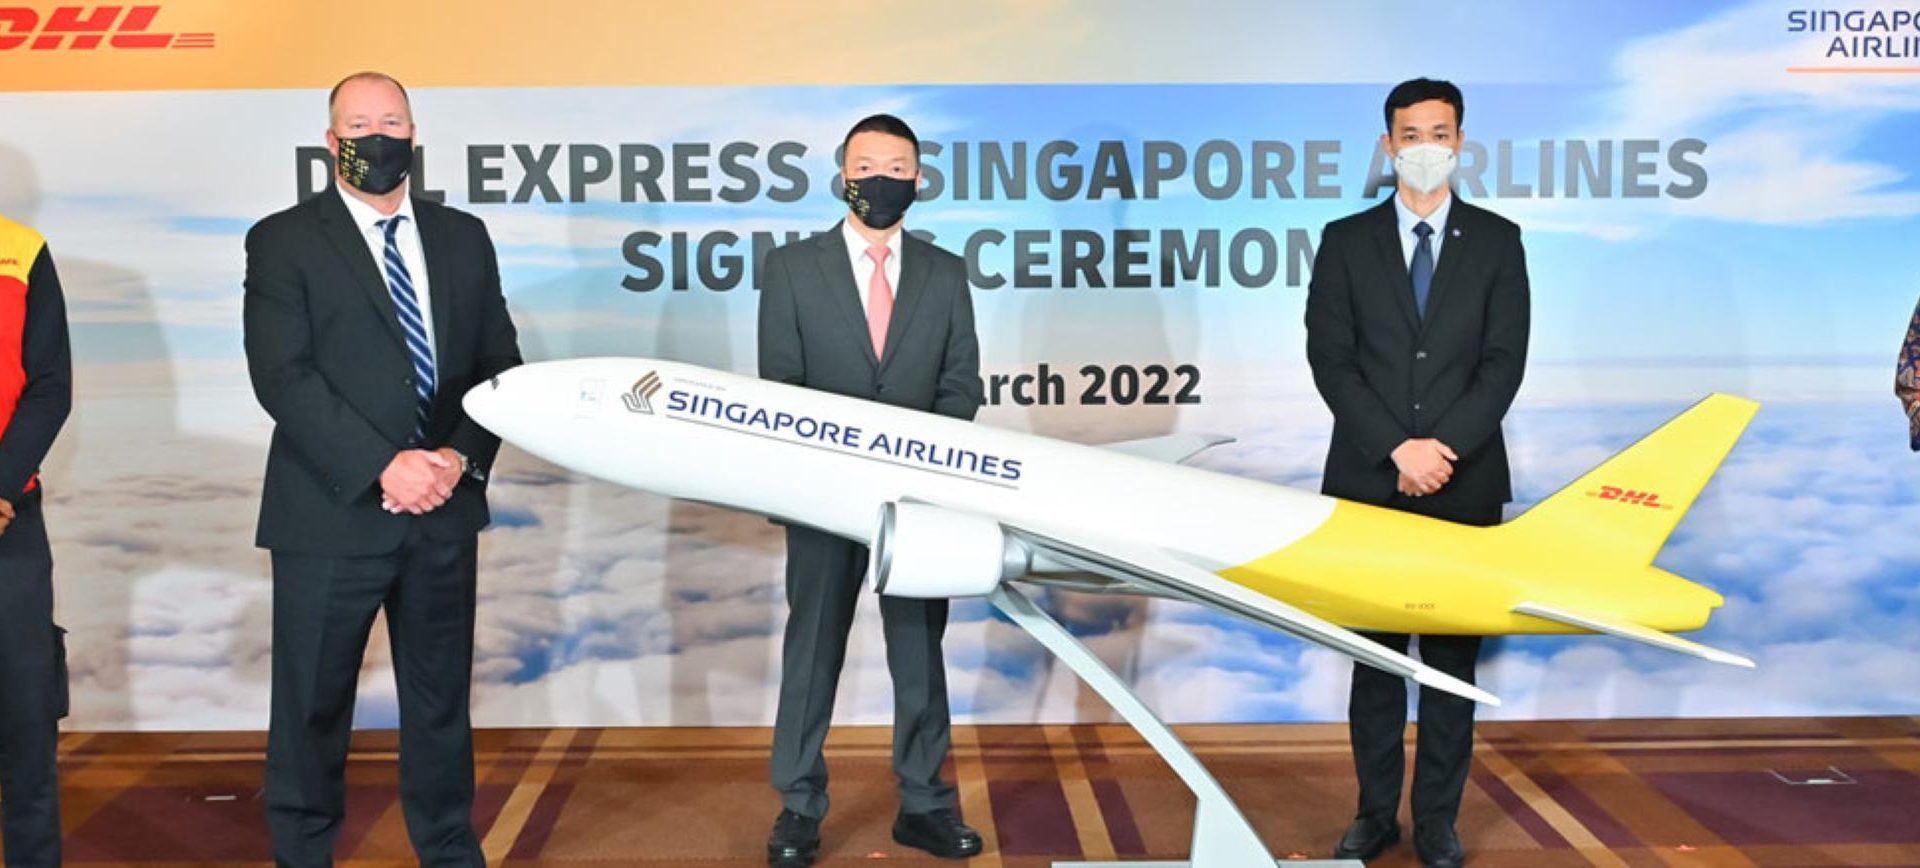 הסכם בין חברת DHL לסינגפור איירליינס